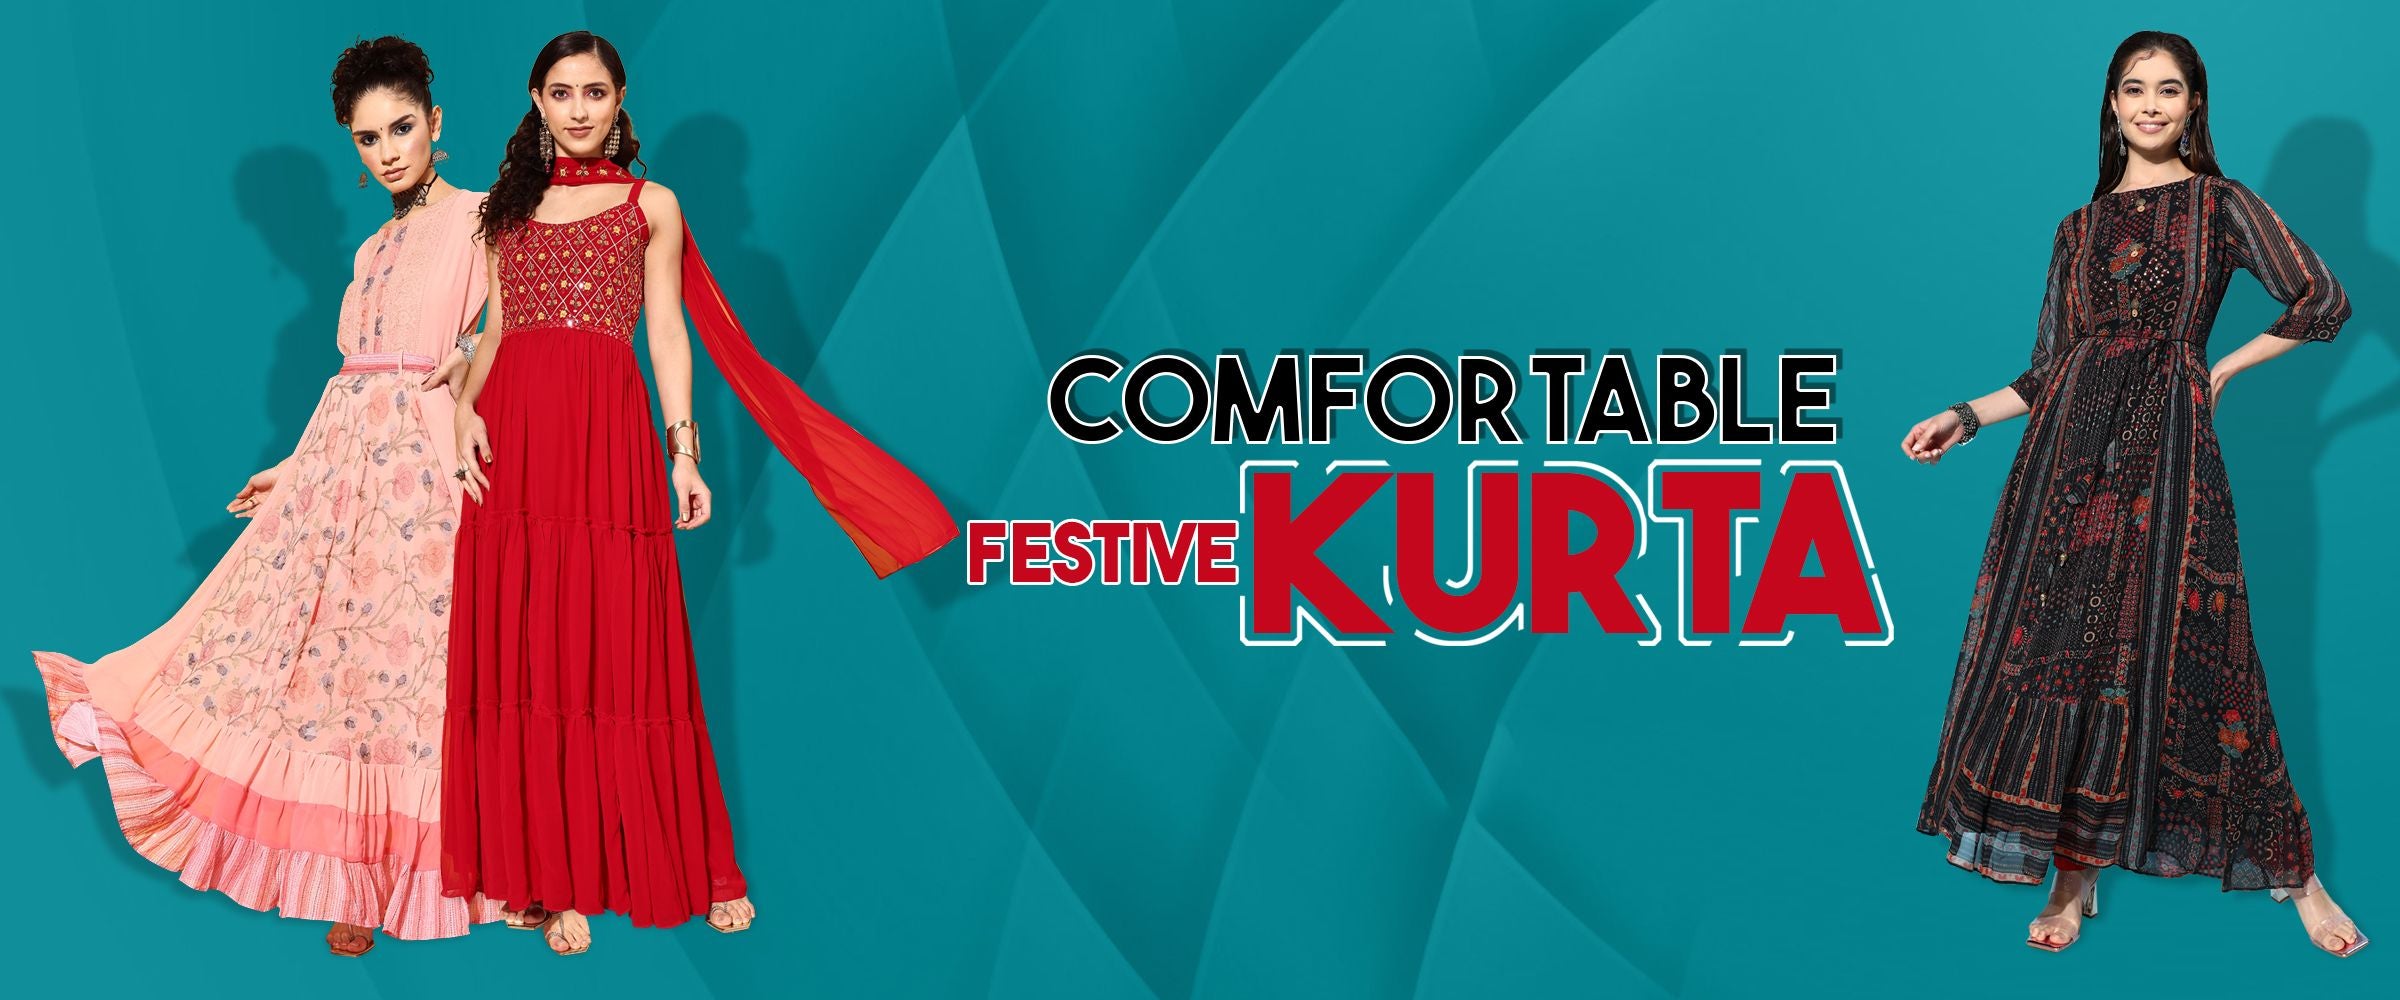 festive kurta banner